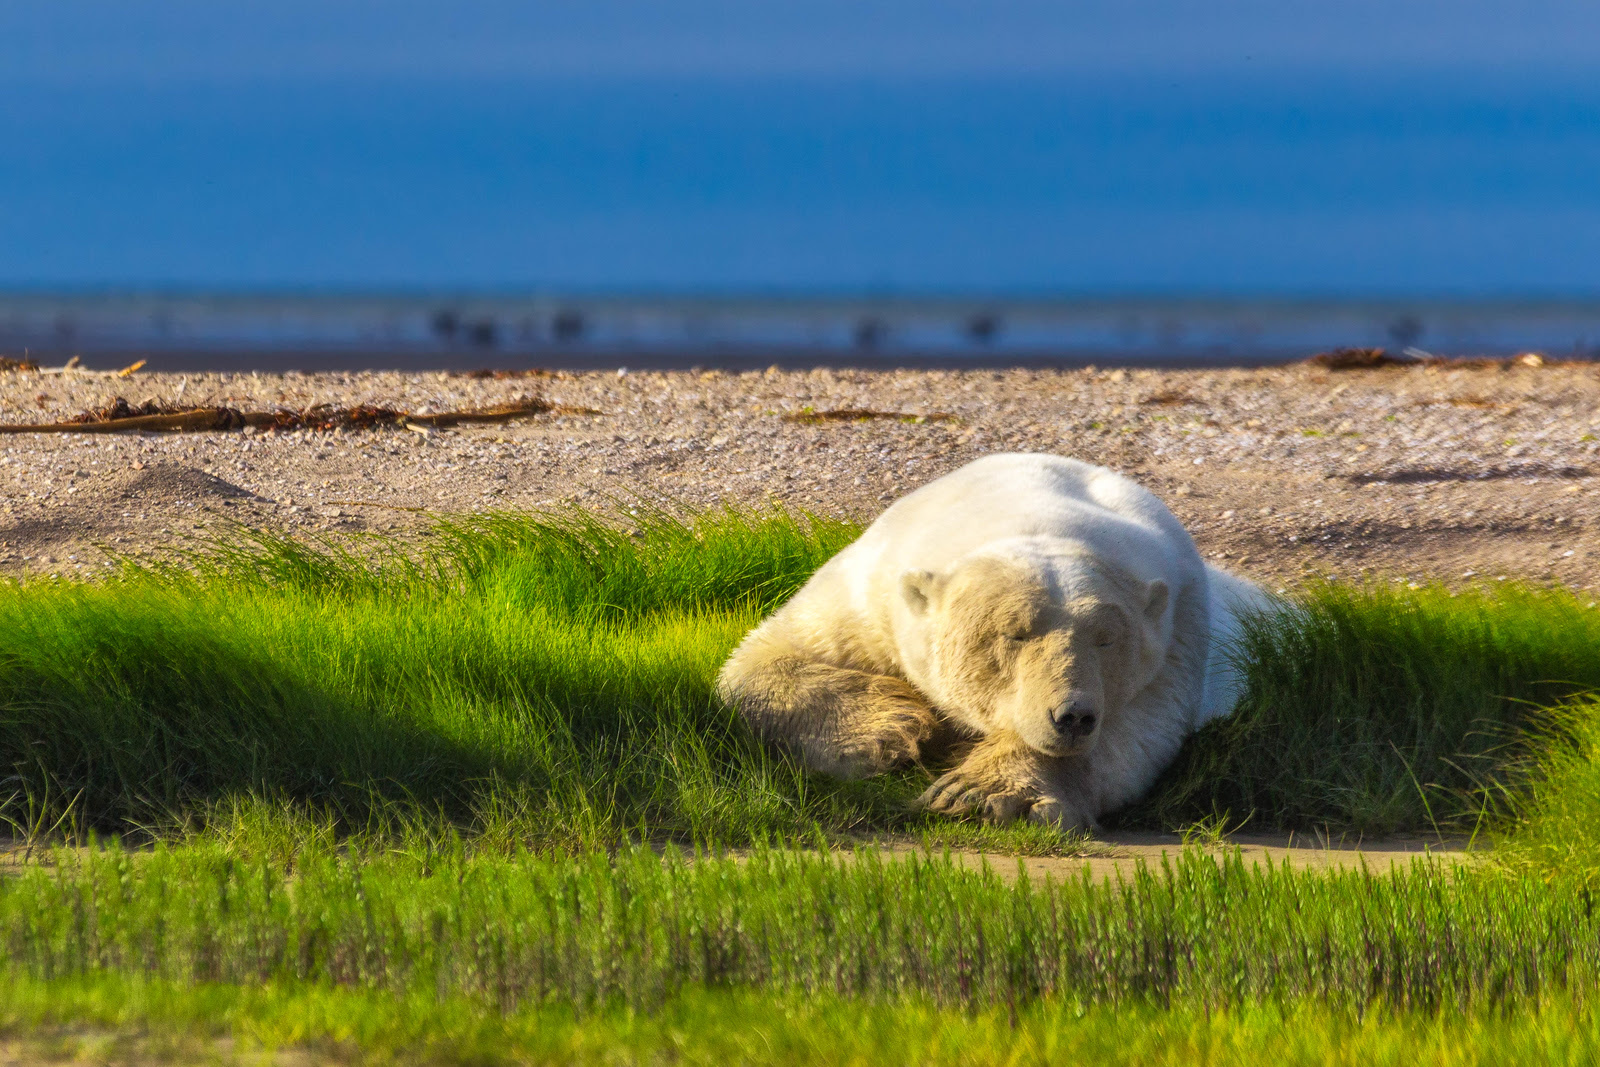 Polar bear photos -sleeping giant